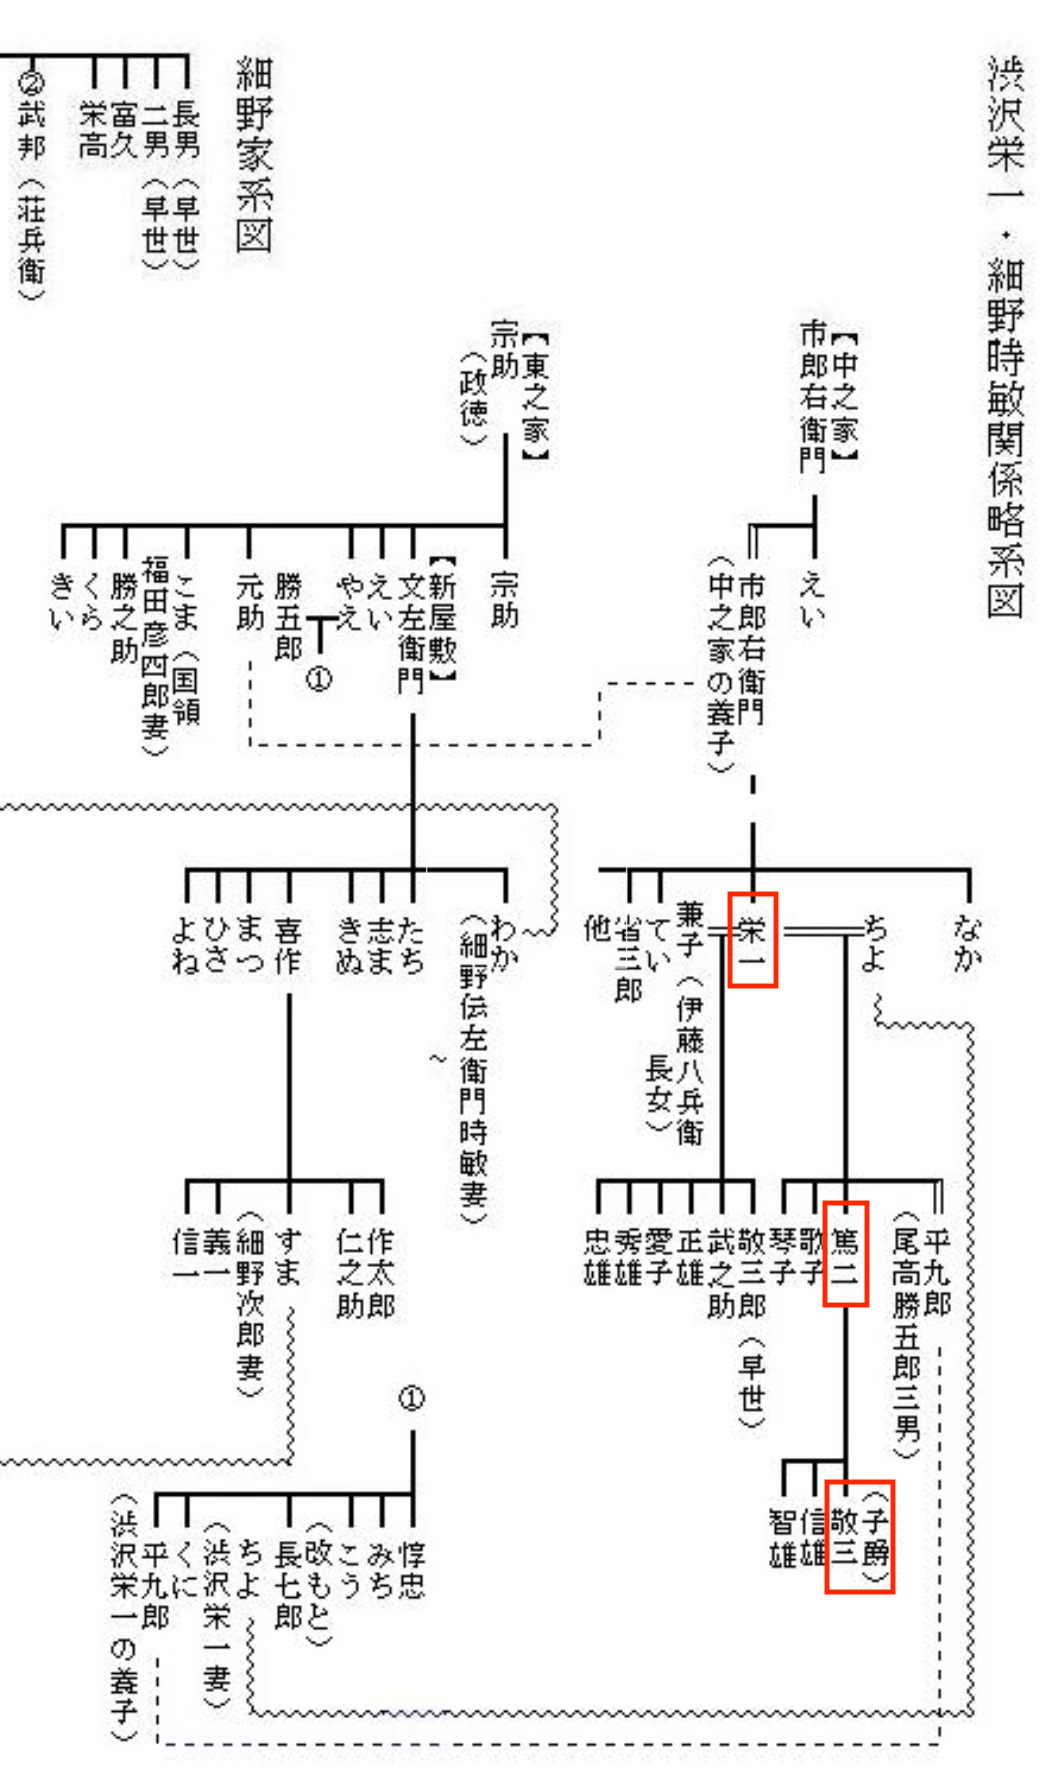 渋沢栄一,家系図